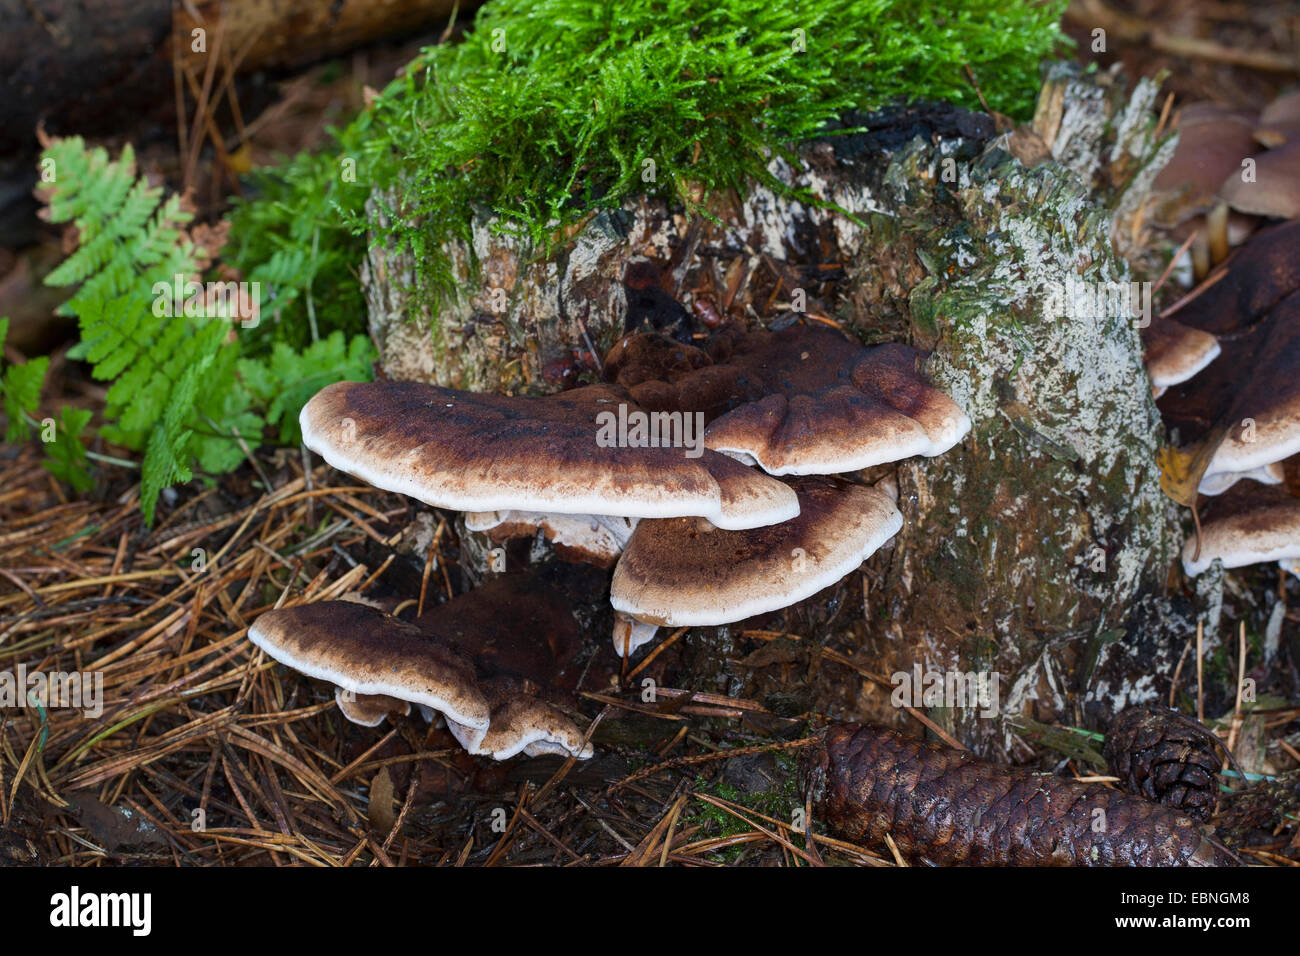 benzoin bracket (Ischnoderma benzoinum, Lasiochlaena benzoina), on a tree snag, Germany Stock Photo